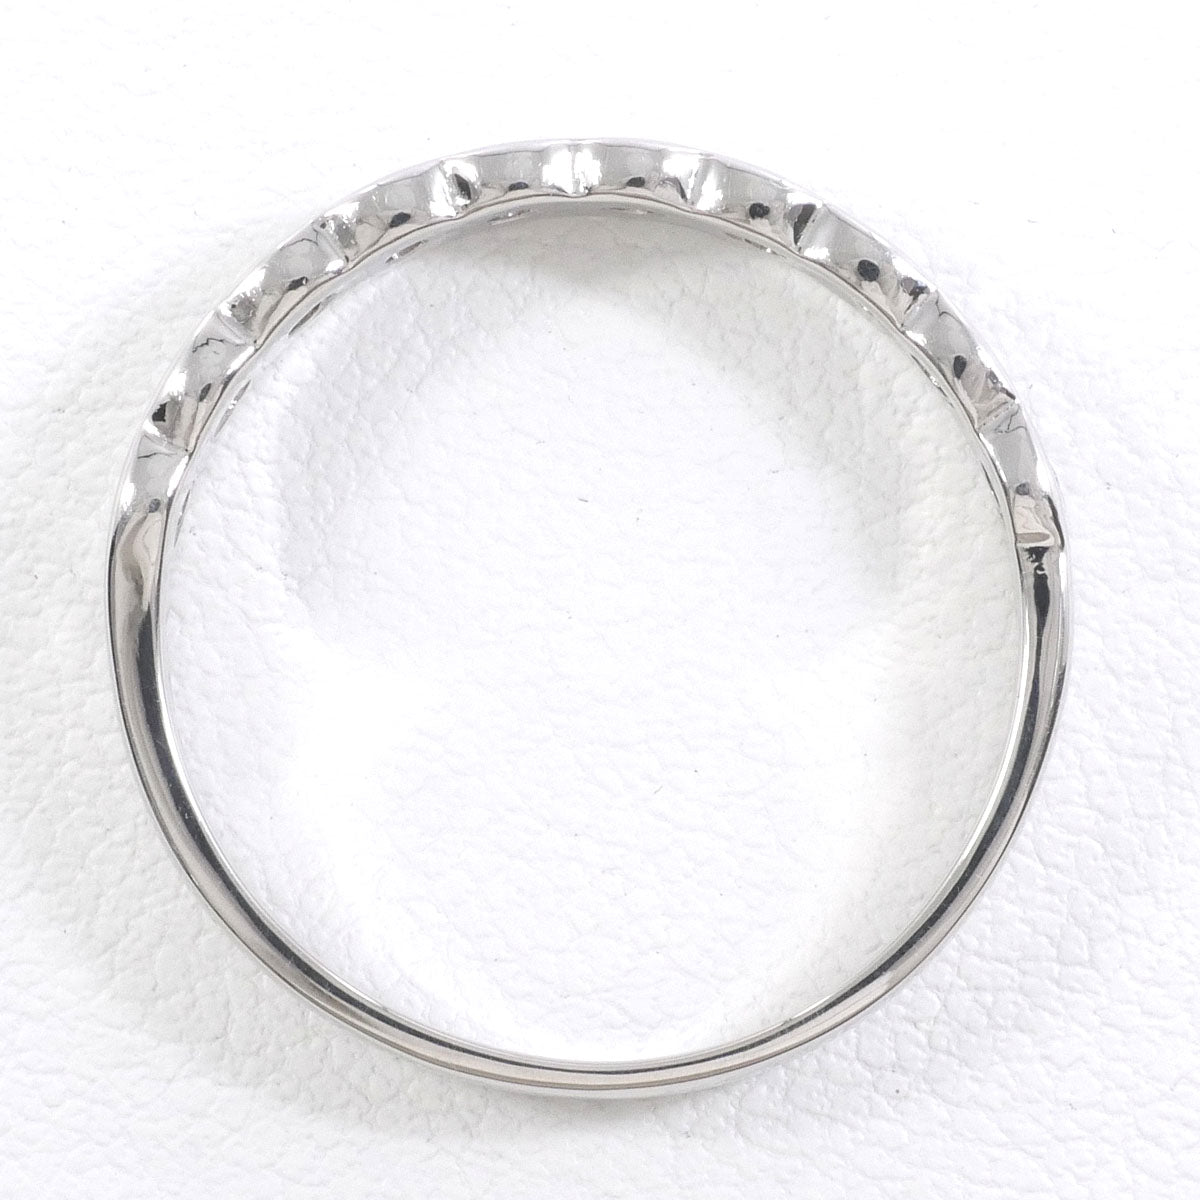 正規品PT900 リング 指輪 10.5号 ダイヤ 総重量約7.0g 中古 美品 送料無料☆0315 プラチナ台